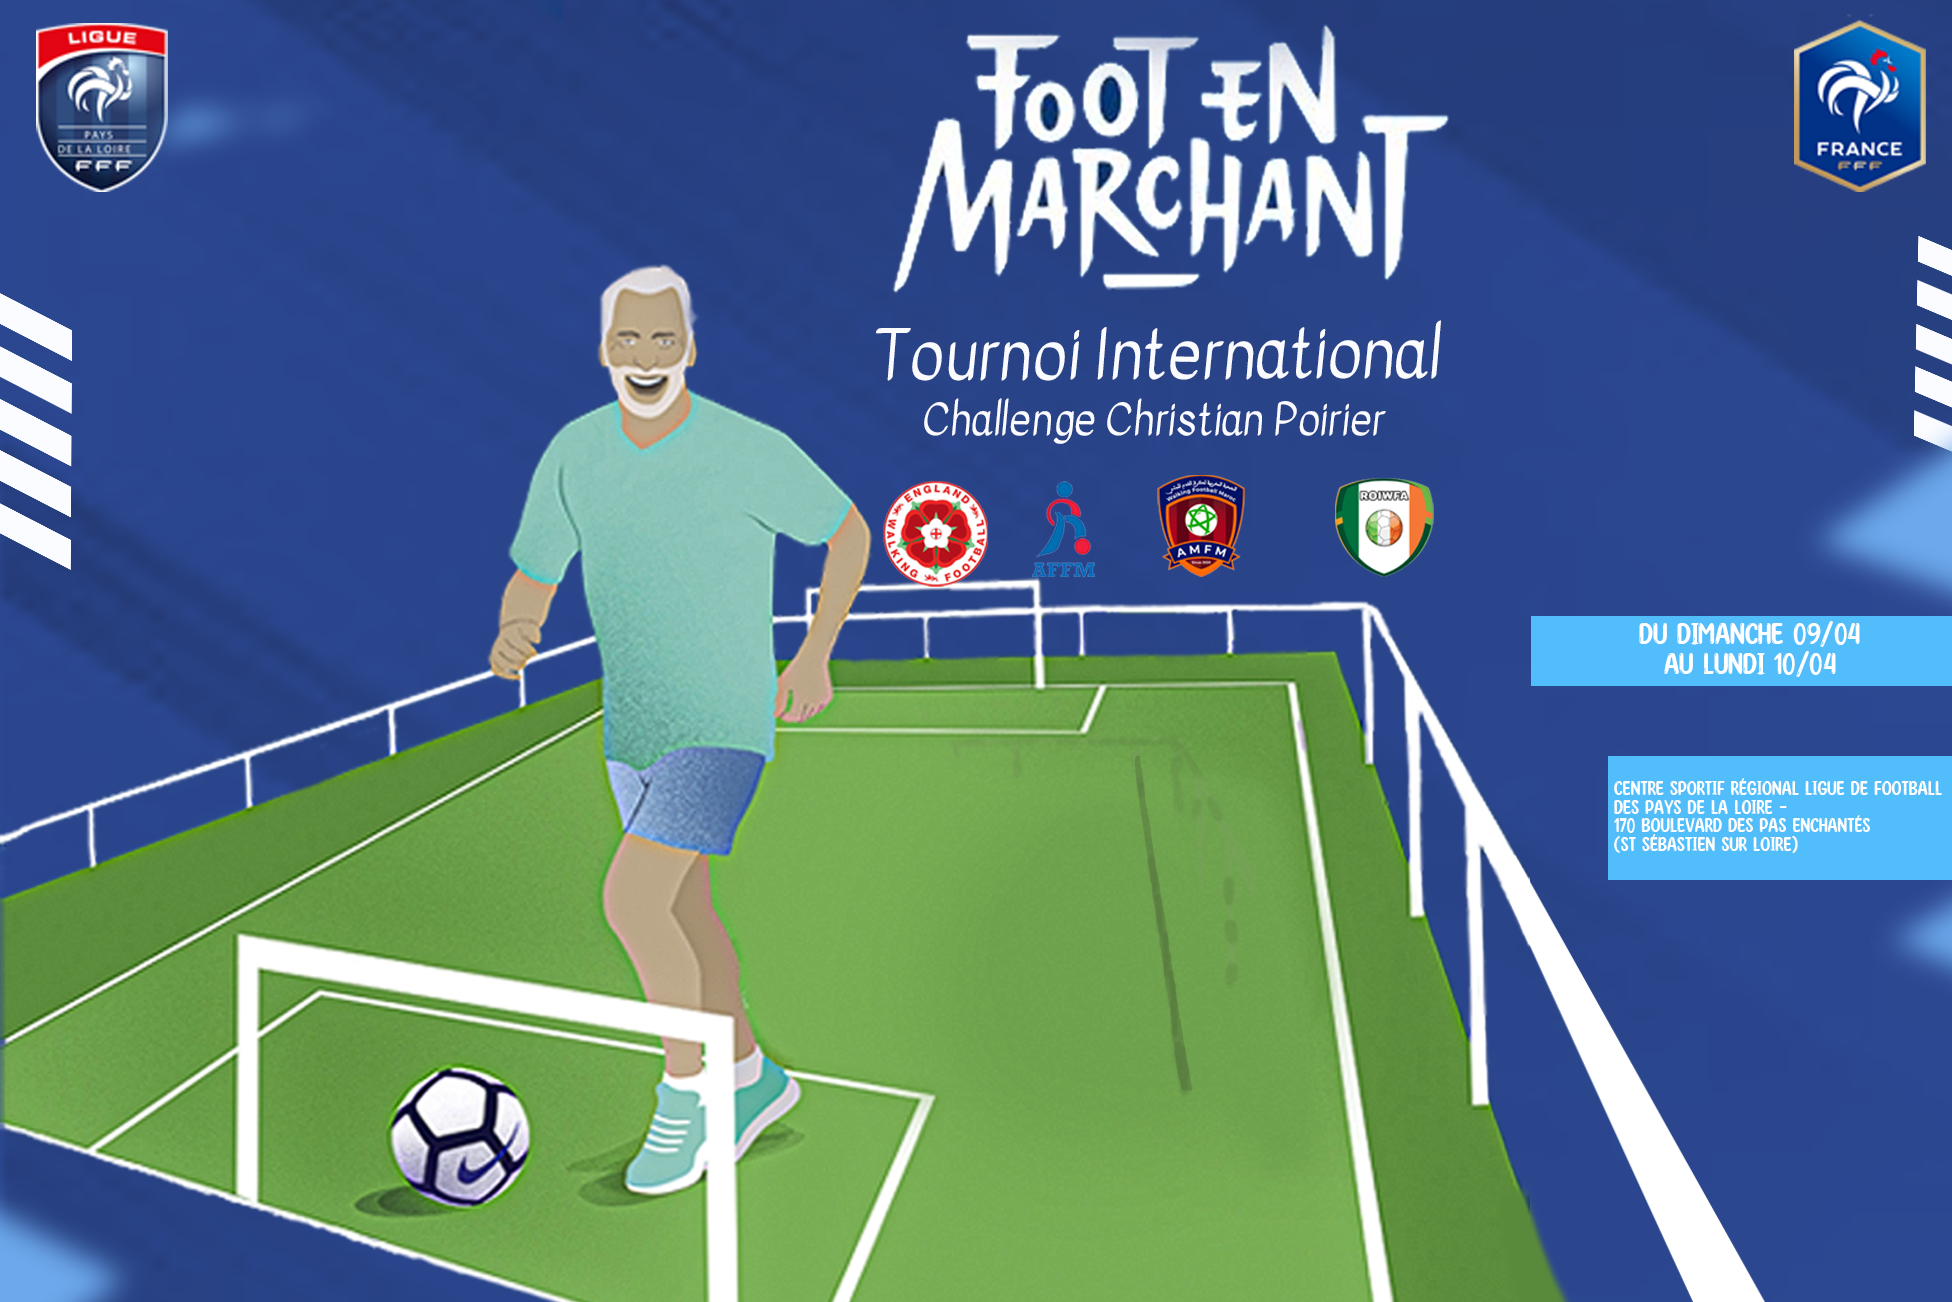 Futnet Tour » : Le Football en Marchant en pleine lumière ! – Ligue de  Football des Pays de la Loire